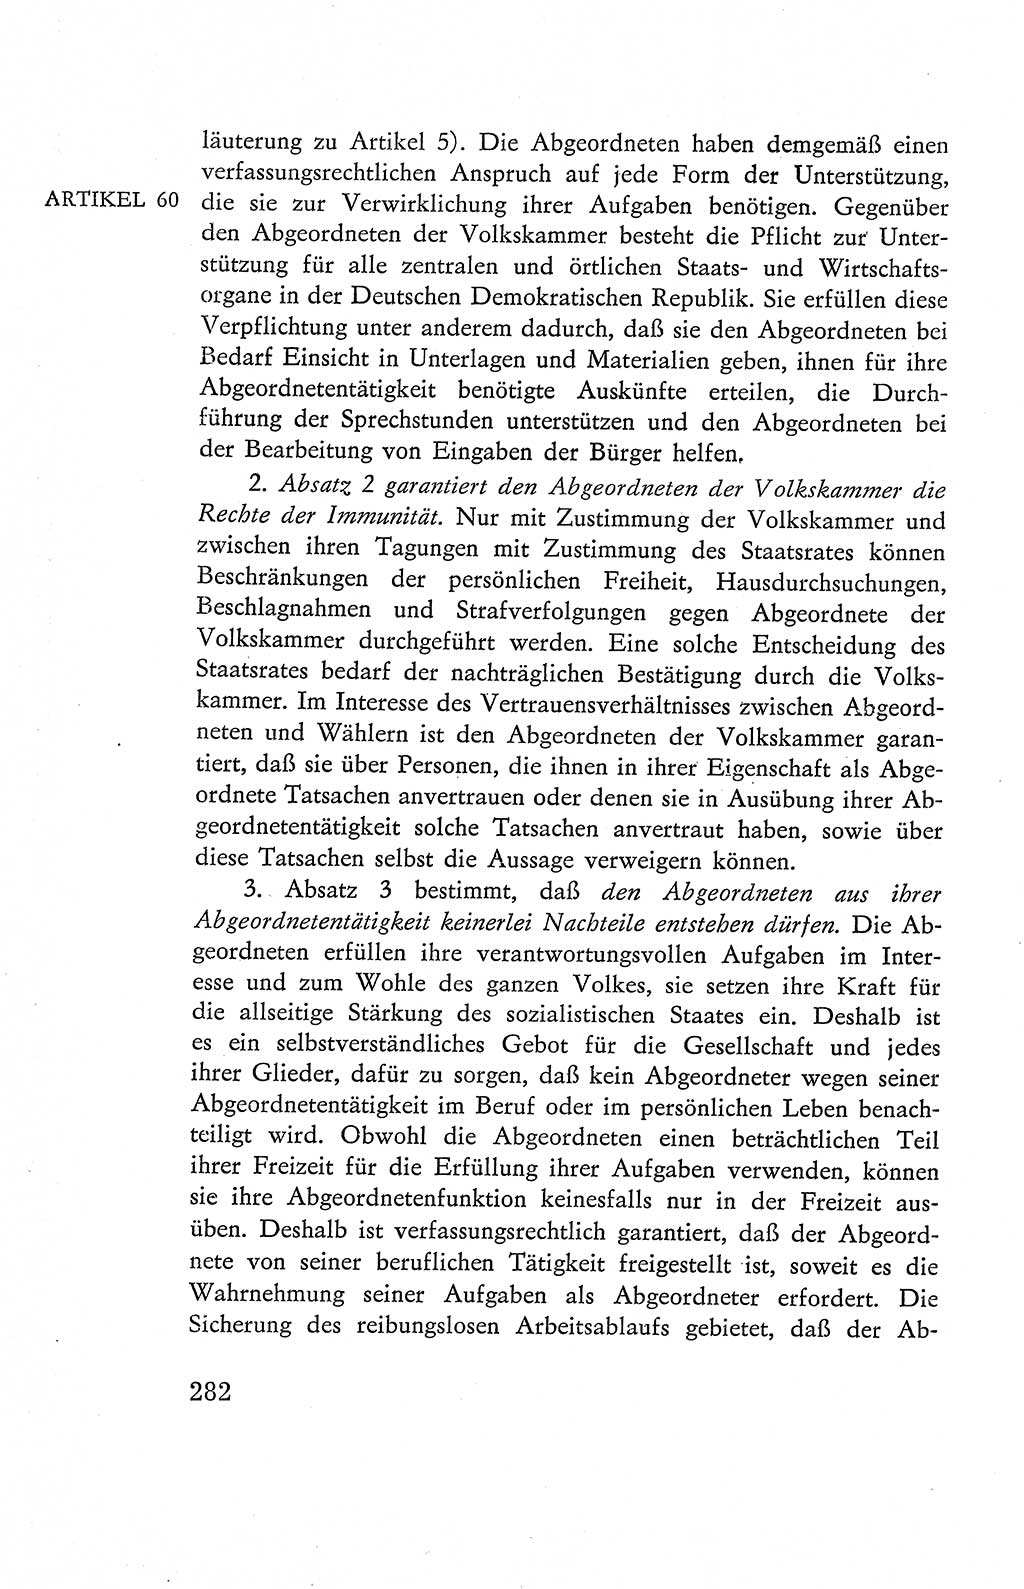 Verfassung der Deutschen Demokratischen Republik (DDR), Dokumente, Kommentar 1969, Band 2, Seite 282 (Verf. DDR Dok. Komm. 1969, Bd. 2, S. 282)